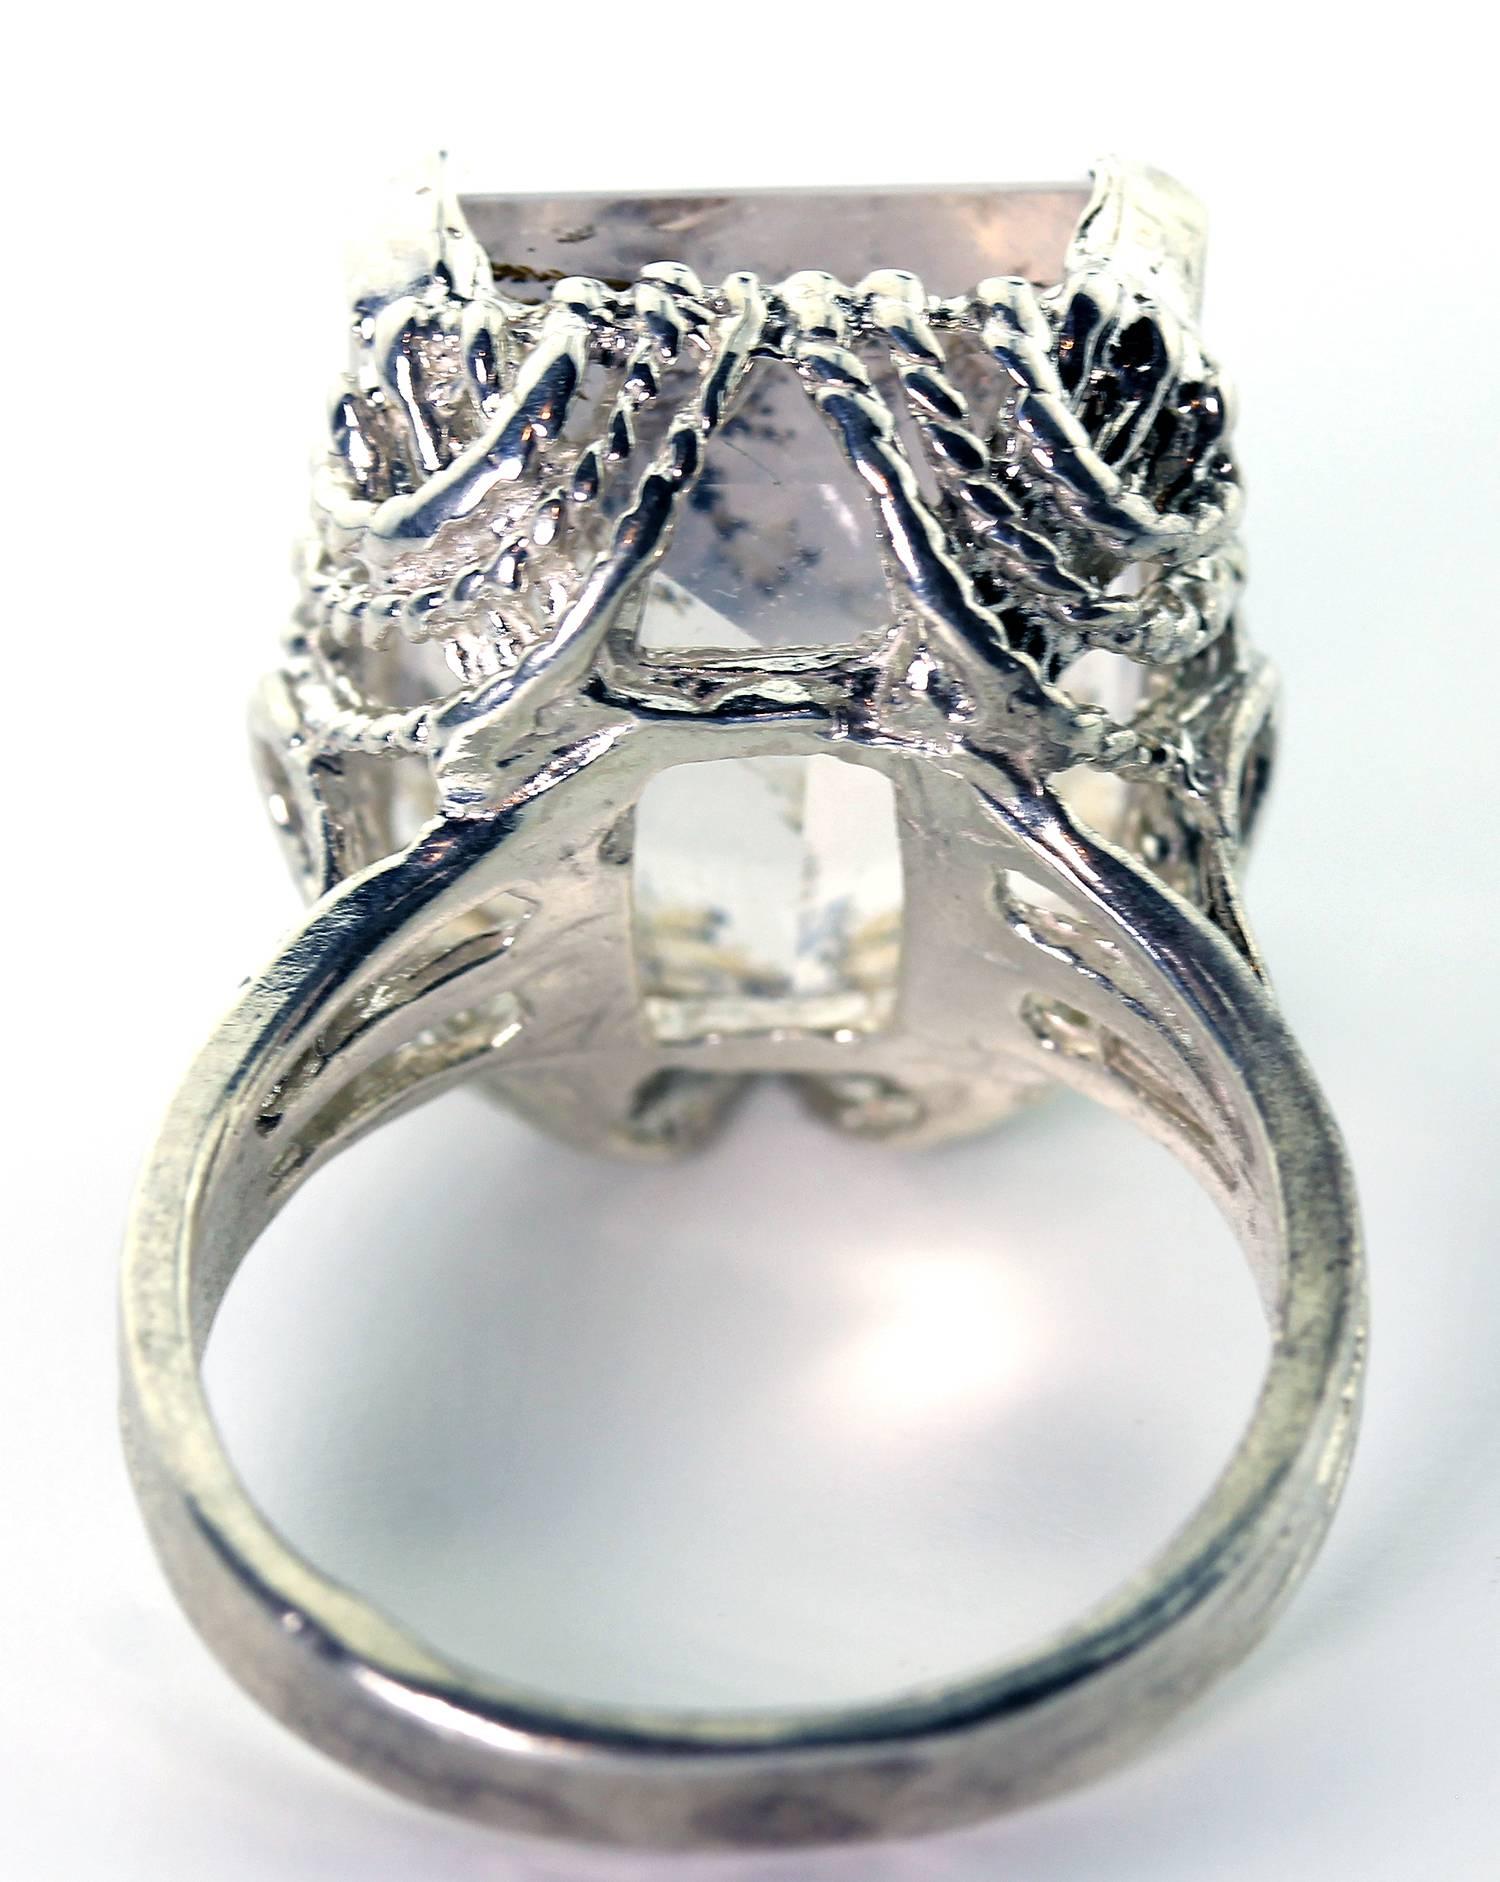 dendritic quartz engagement ring